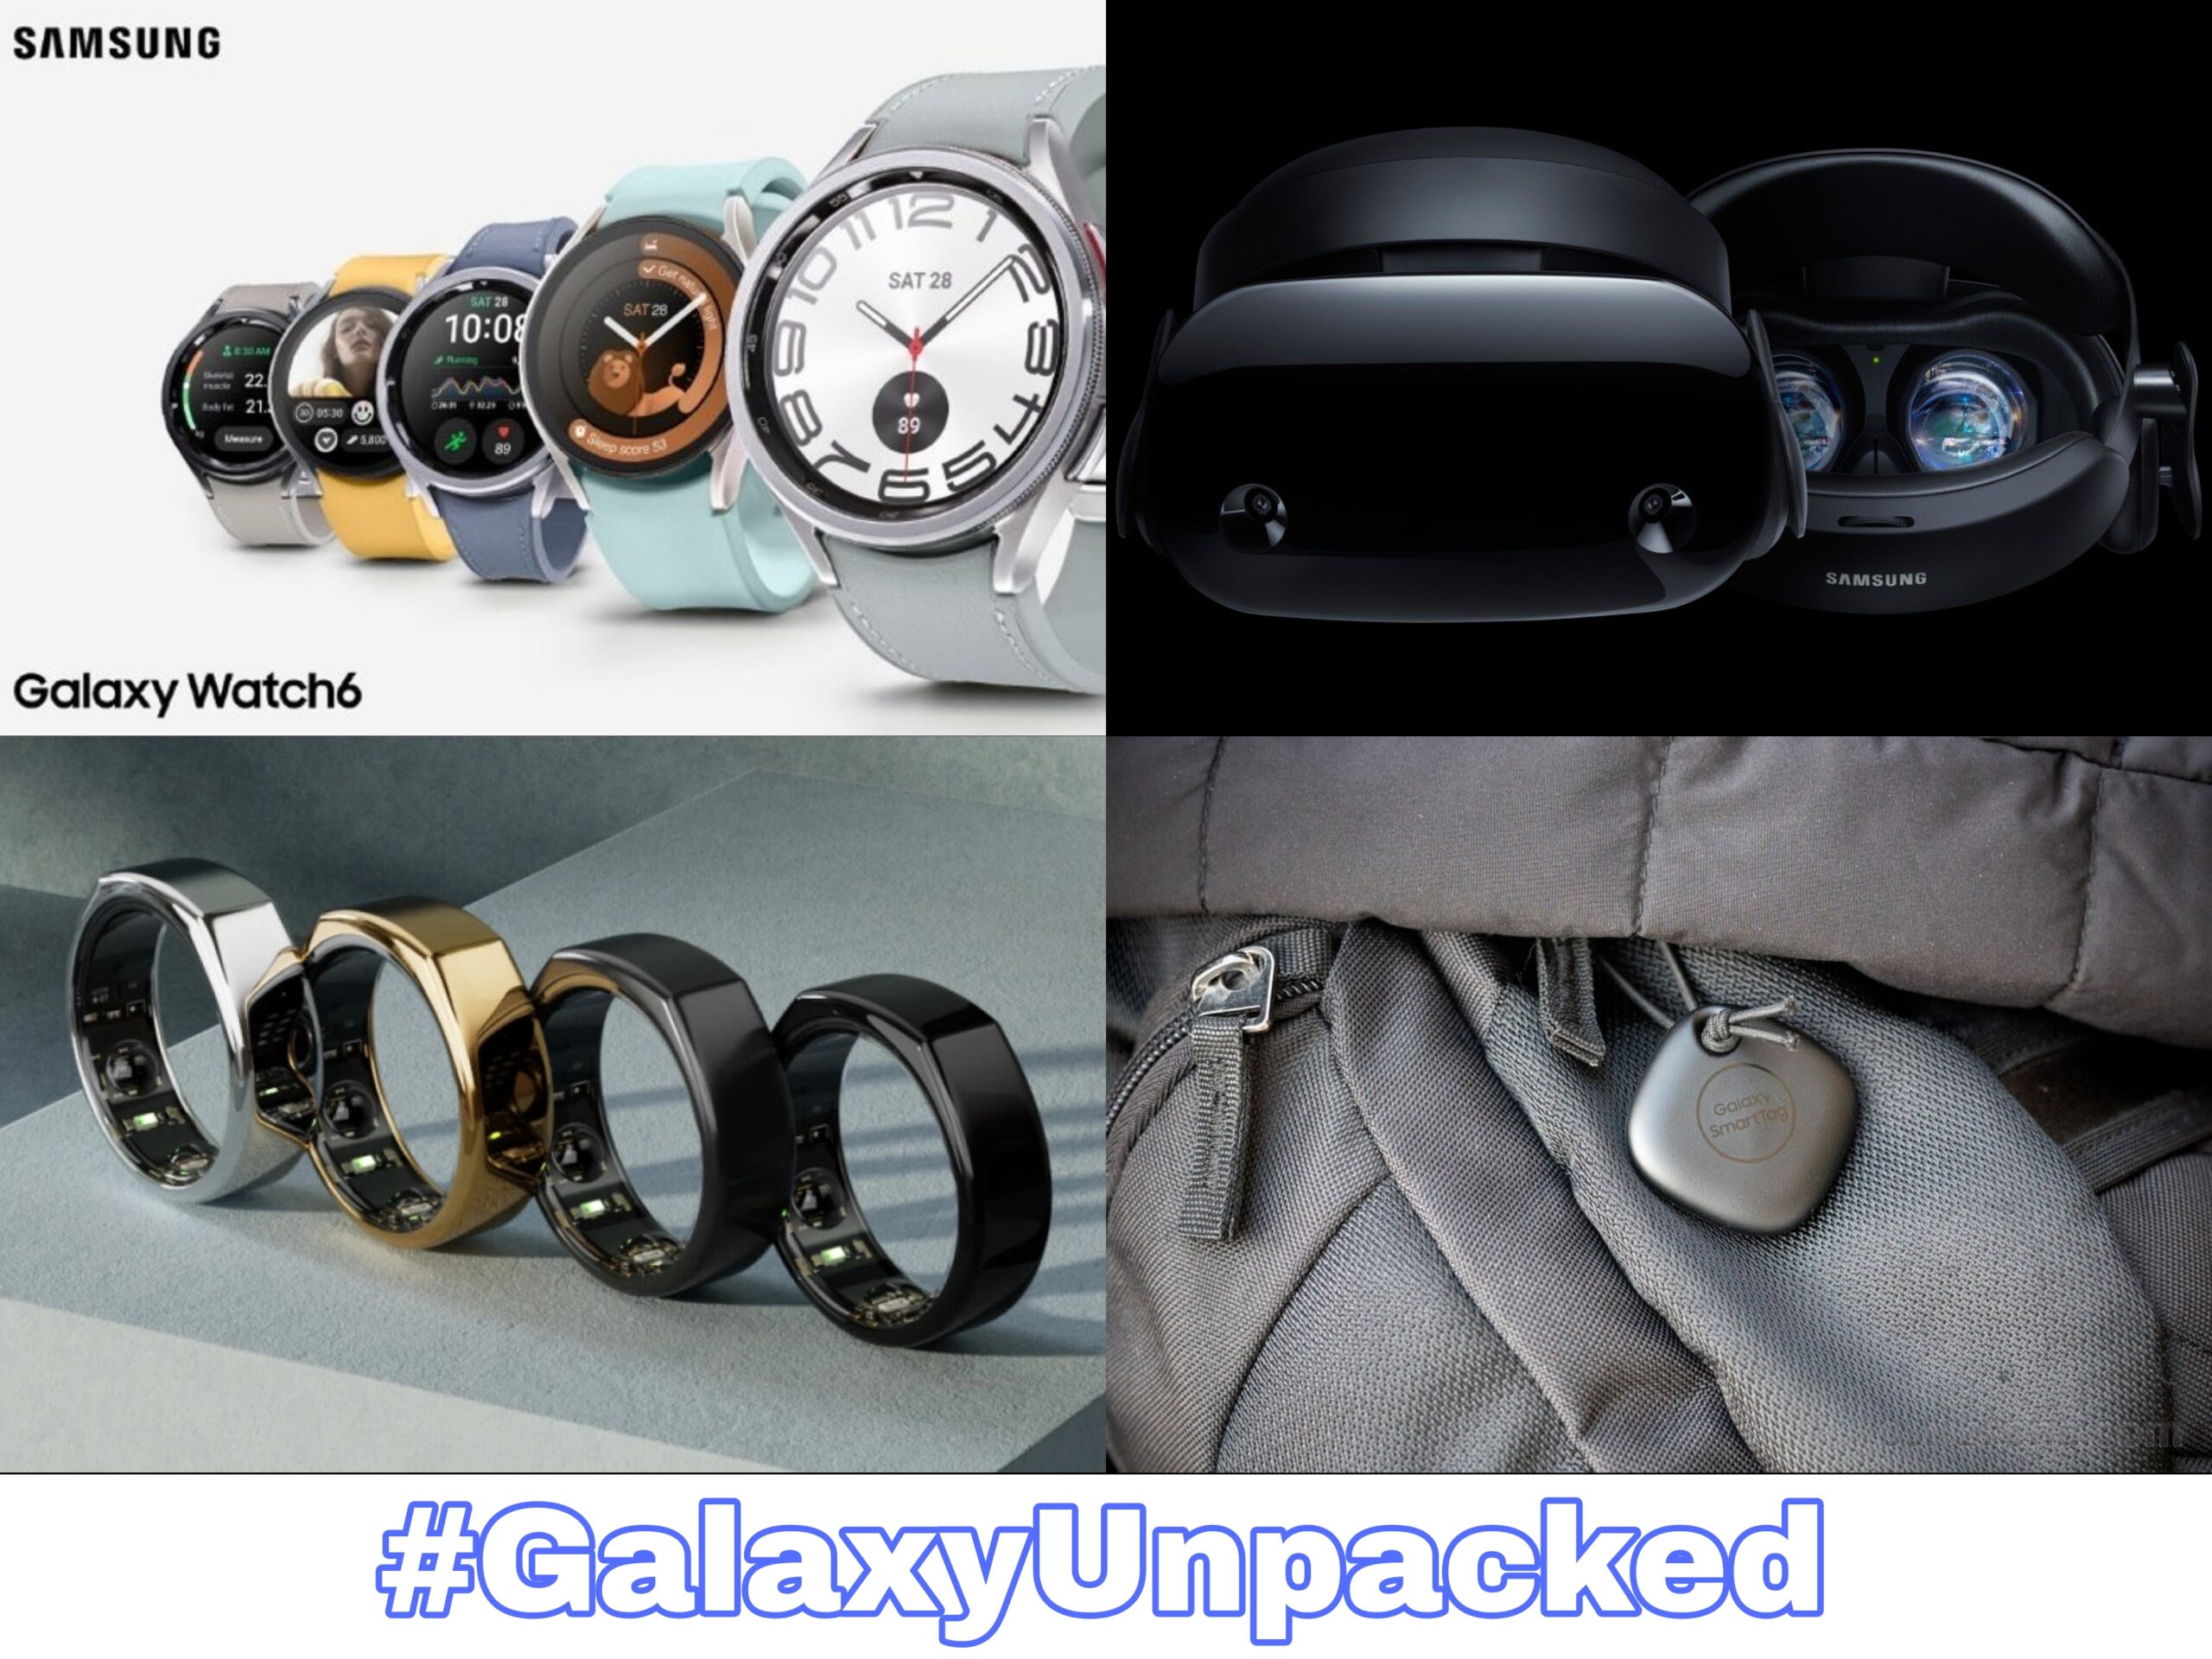 Samsung Galaxy Watch 6 Series | Samsung XR Headset | Samsung Smart Ring | Samsung Smart Tag 2 | Samsung Galaxy Unpacked 2023